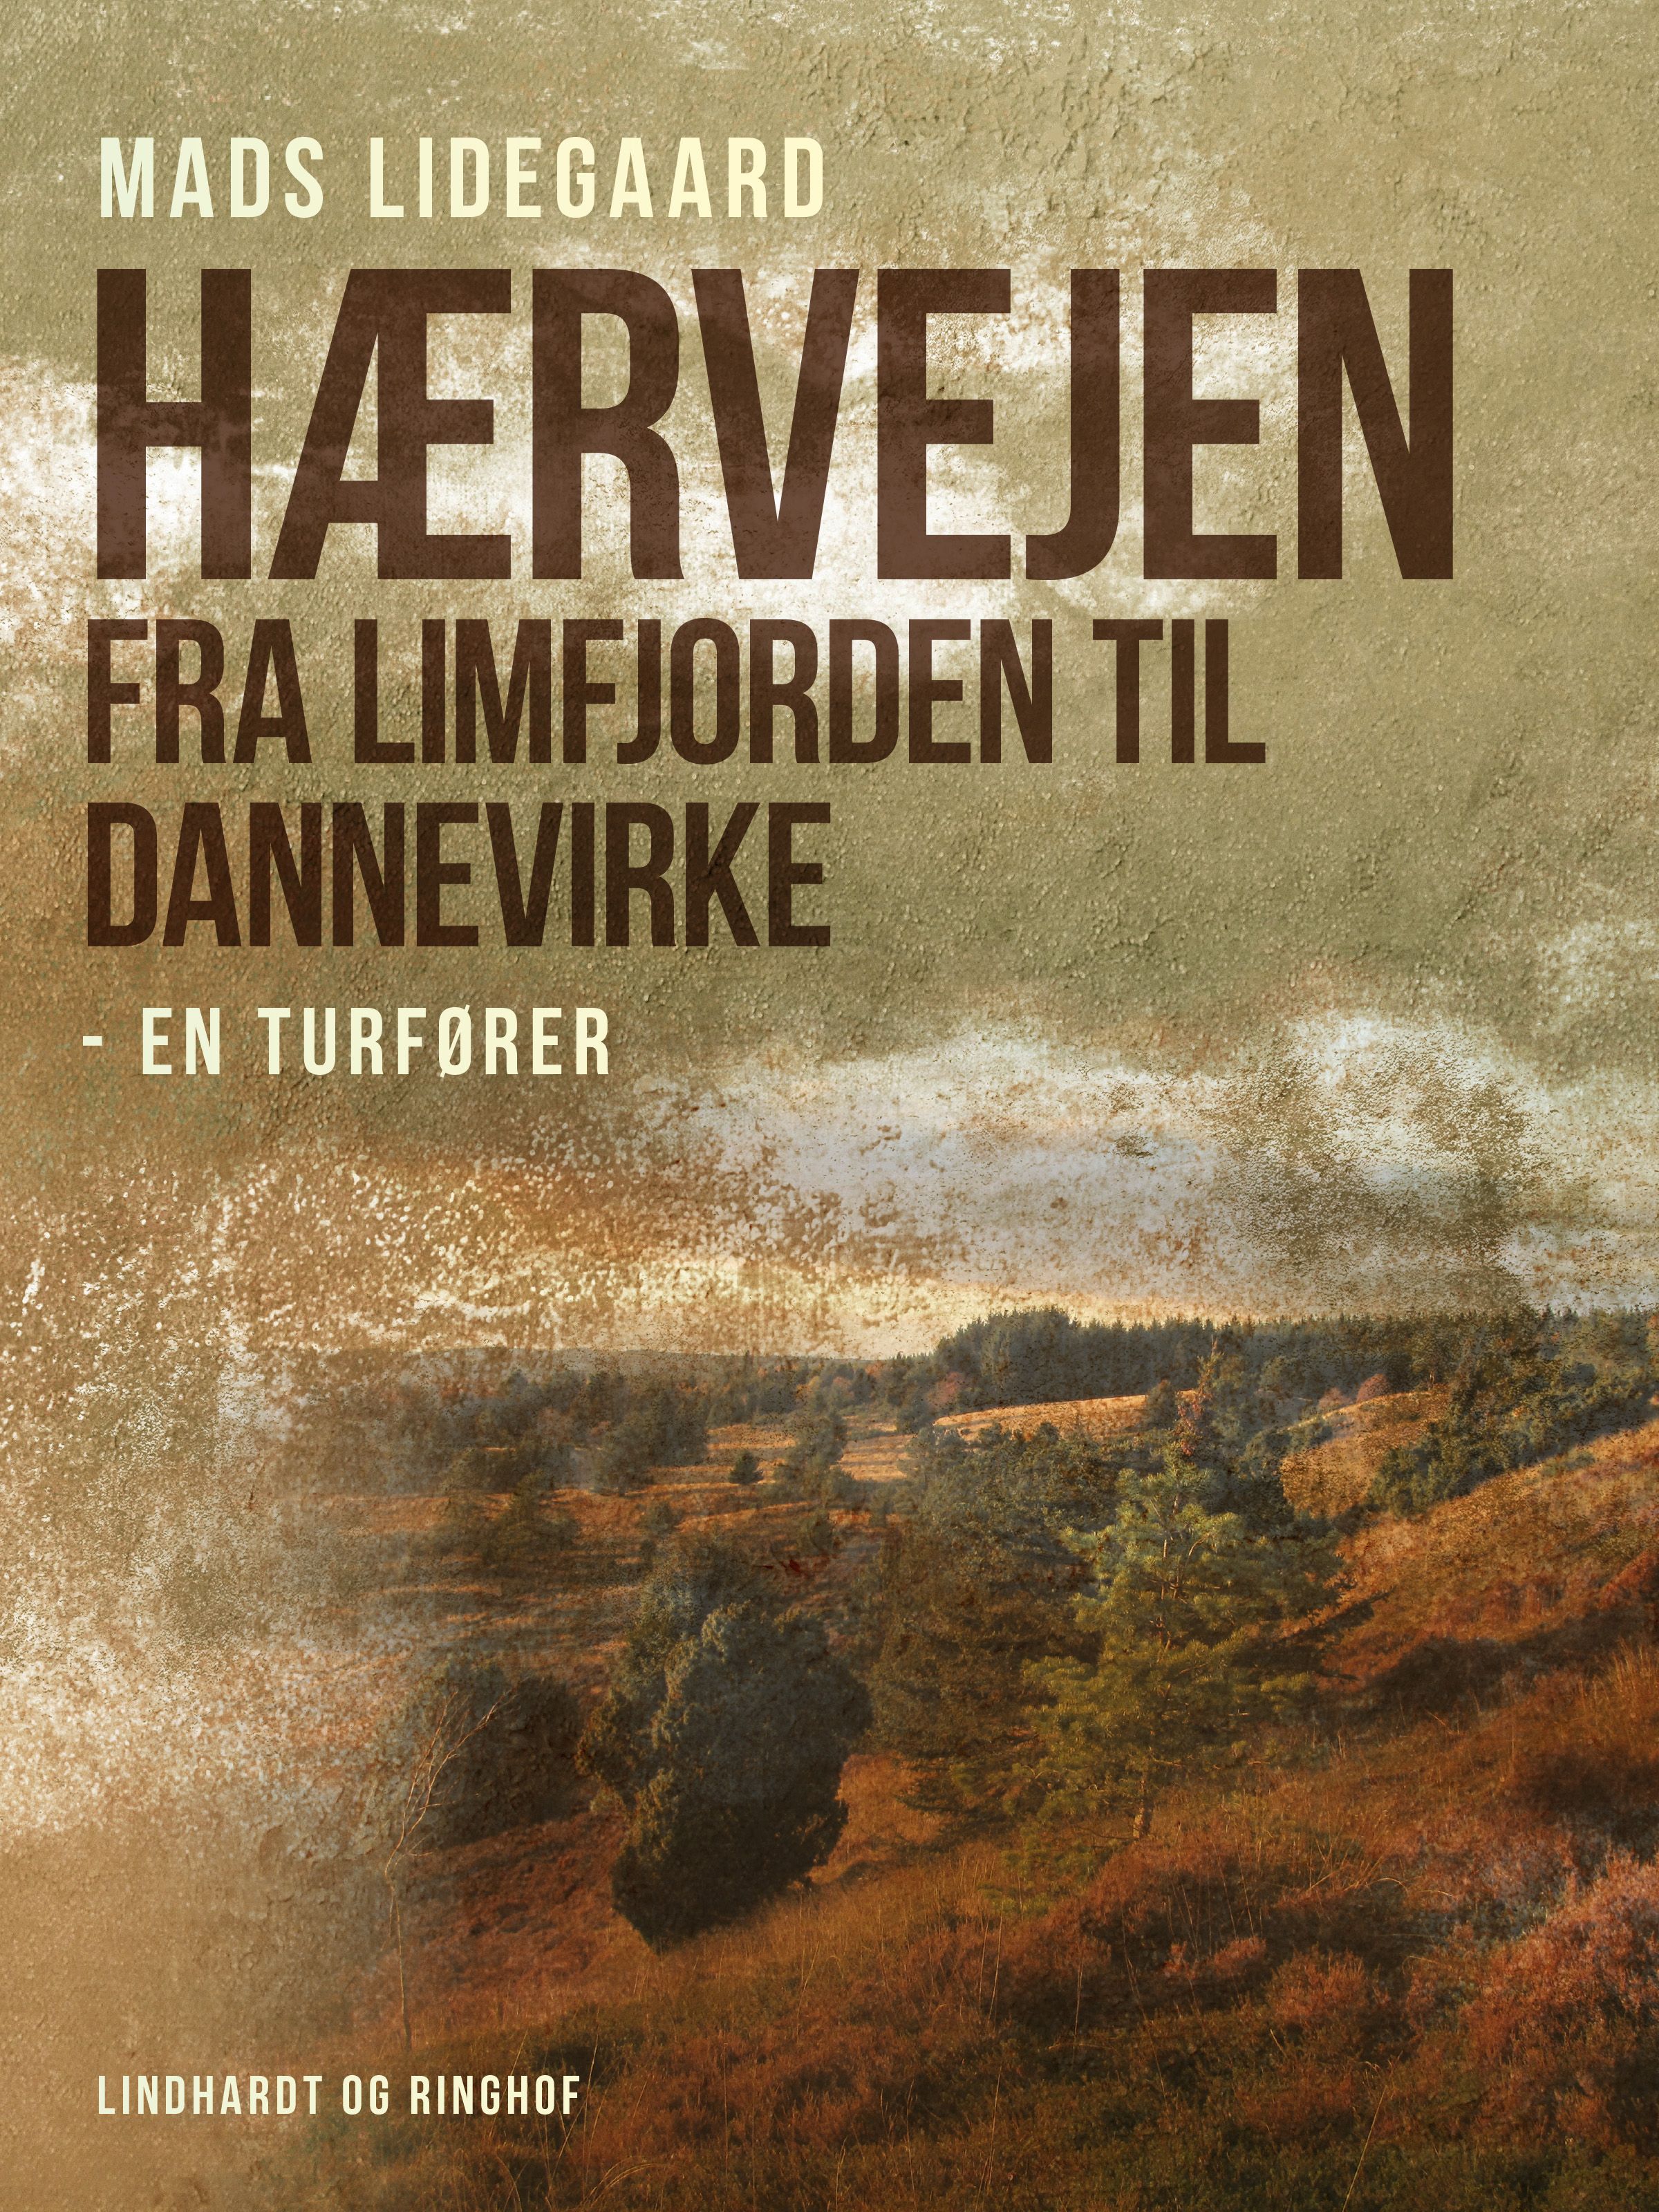 Hærvejen fra Limfjorden til Dannevirke – en turfører, e-bog af Mads Lidegaard